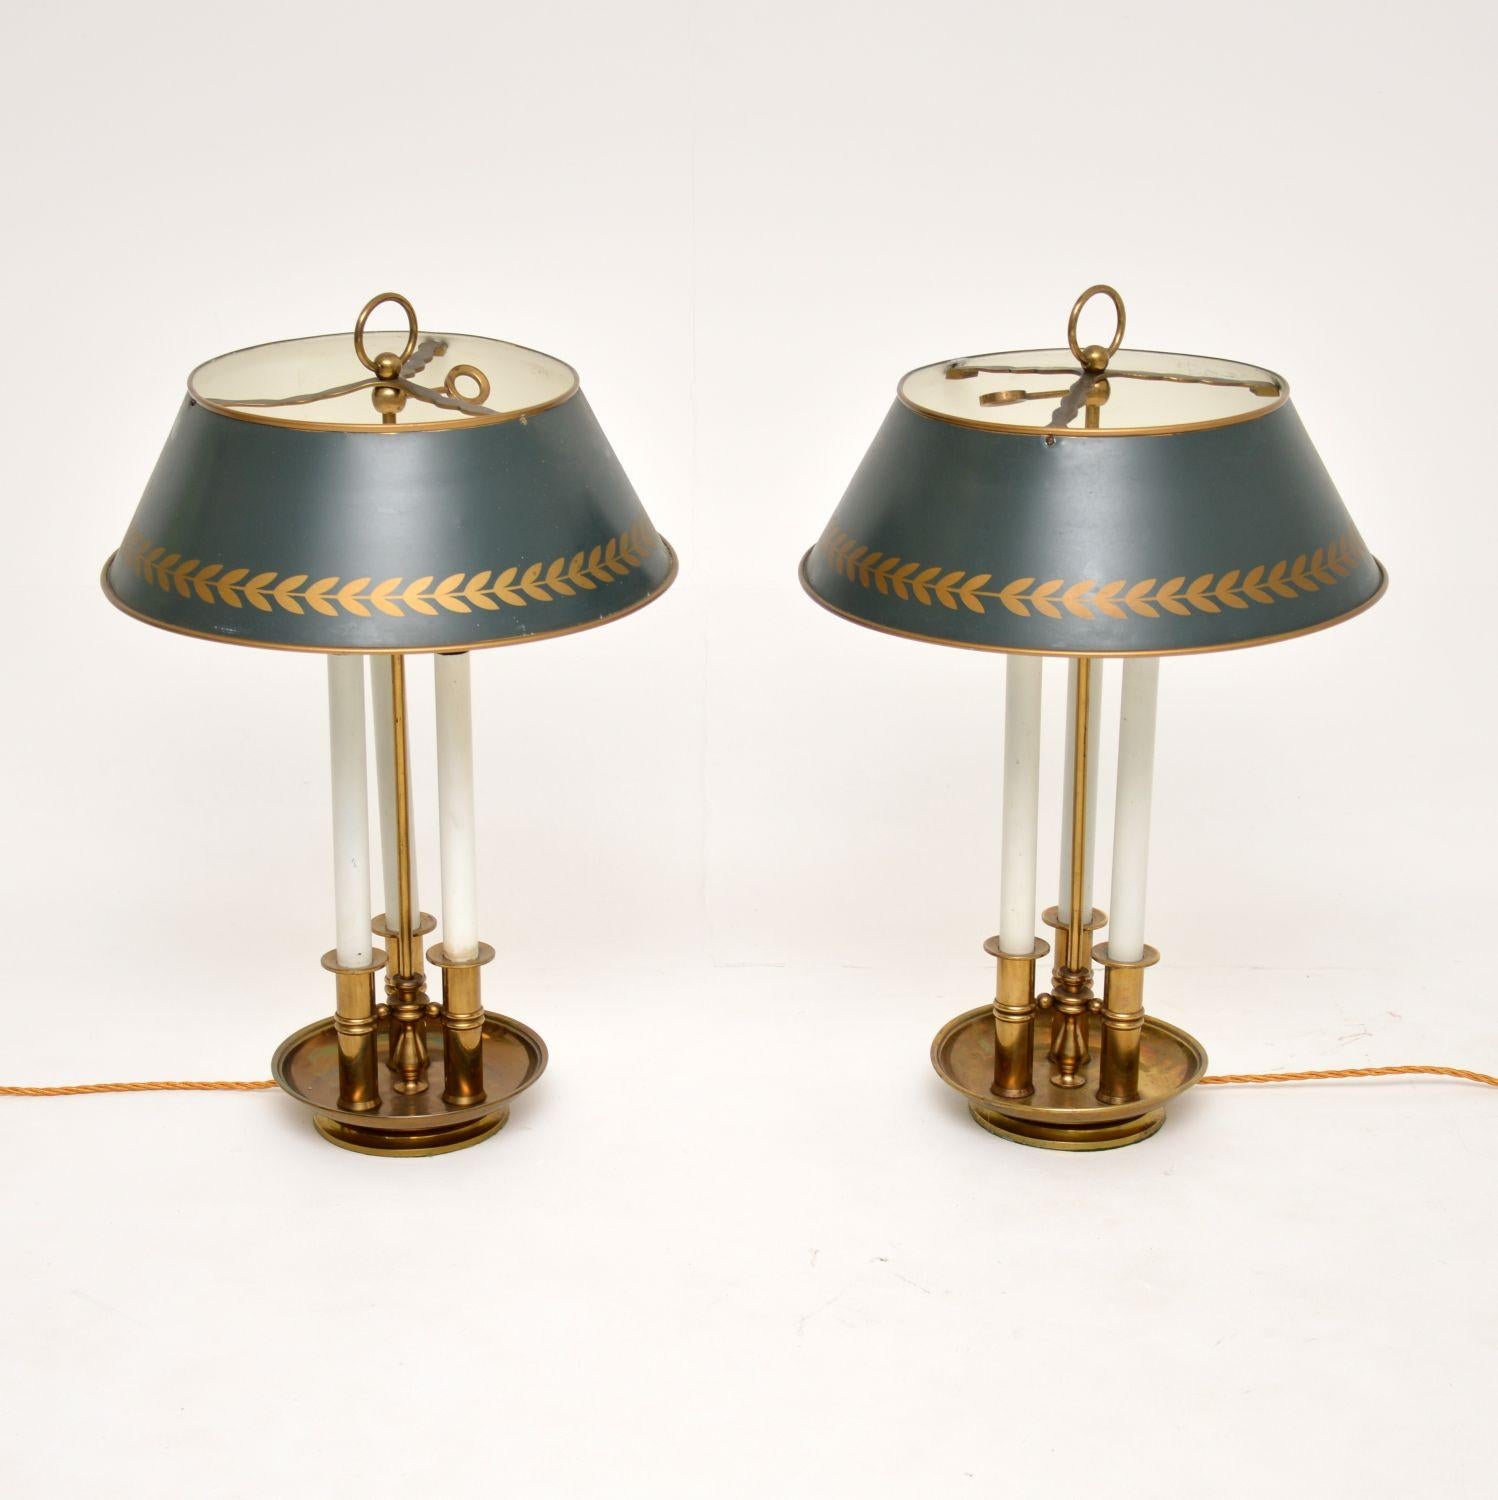 Ein großartiges Paar antiker Tischlampen aus Messing mit schönen Tole-Schirmen. Sie wurden in England hergestellt und stammen etwa aus den 1920-30er Jahren.

Die Qualität ist hervorragend, sie haben ein wunderschönes Design und eine sehr